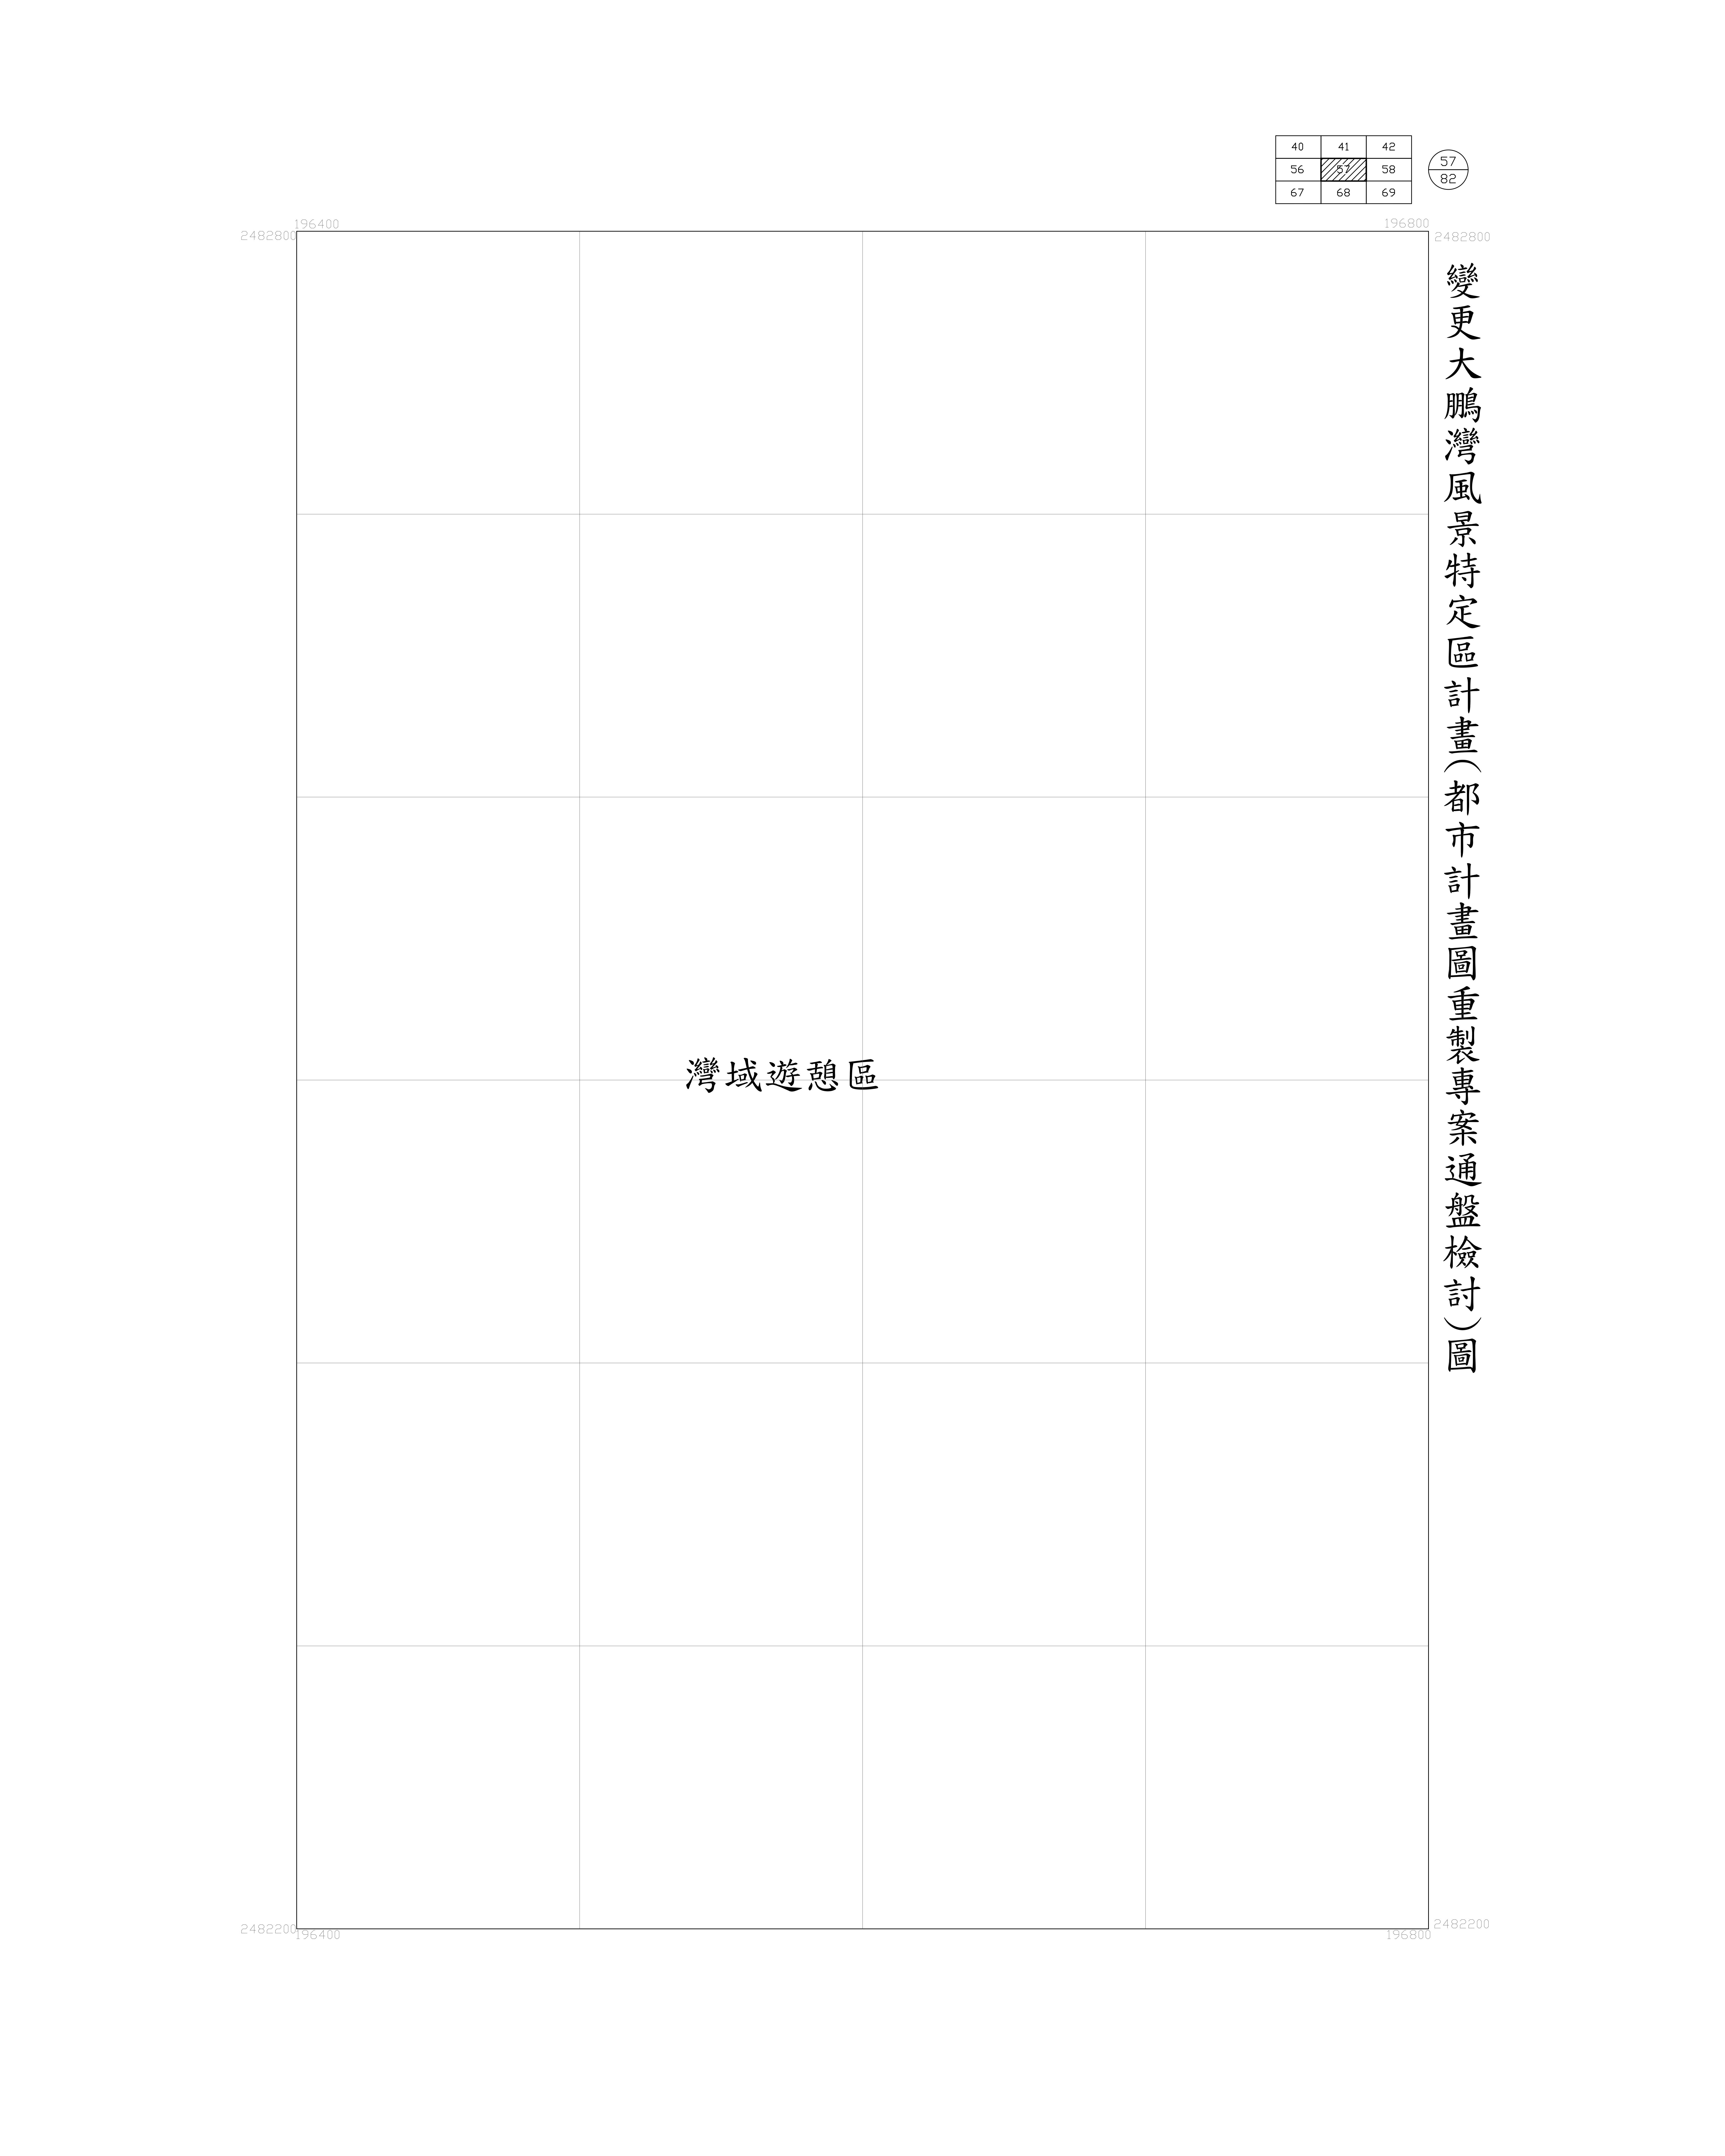 大鵬灣-都市計畫圖重製專案通盤檢討圖(核定)57-1